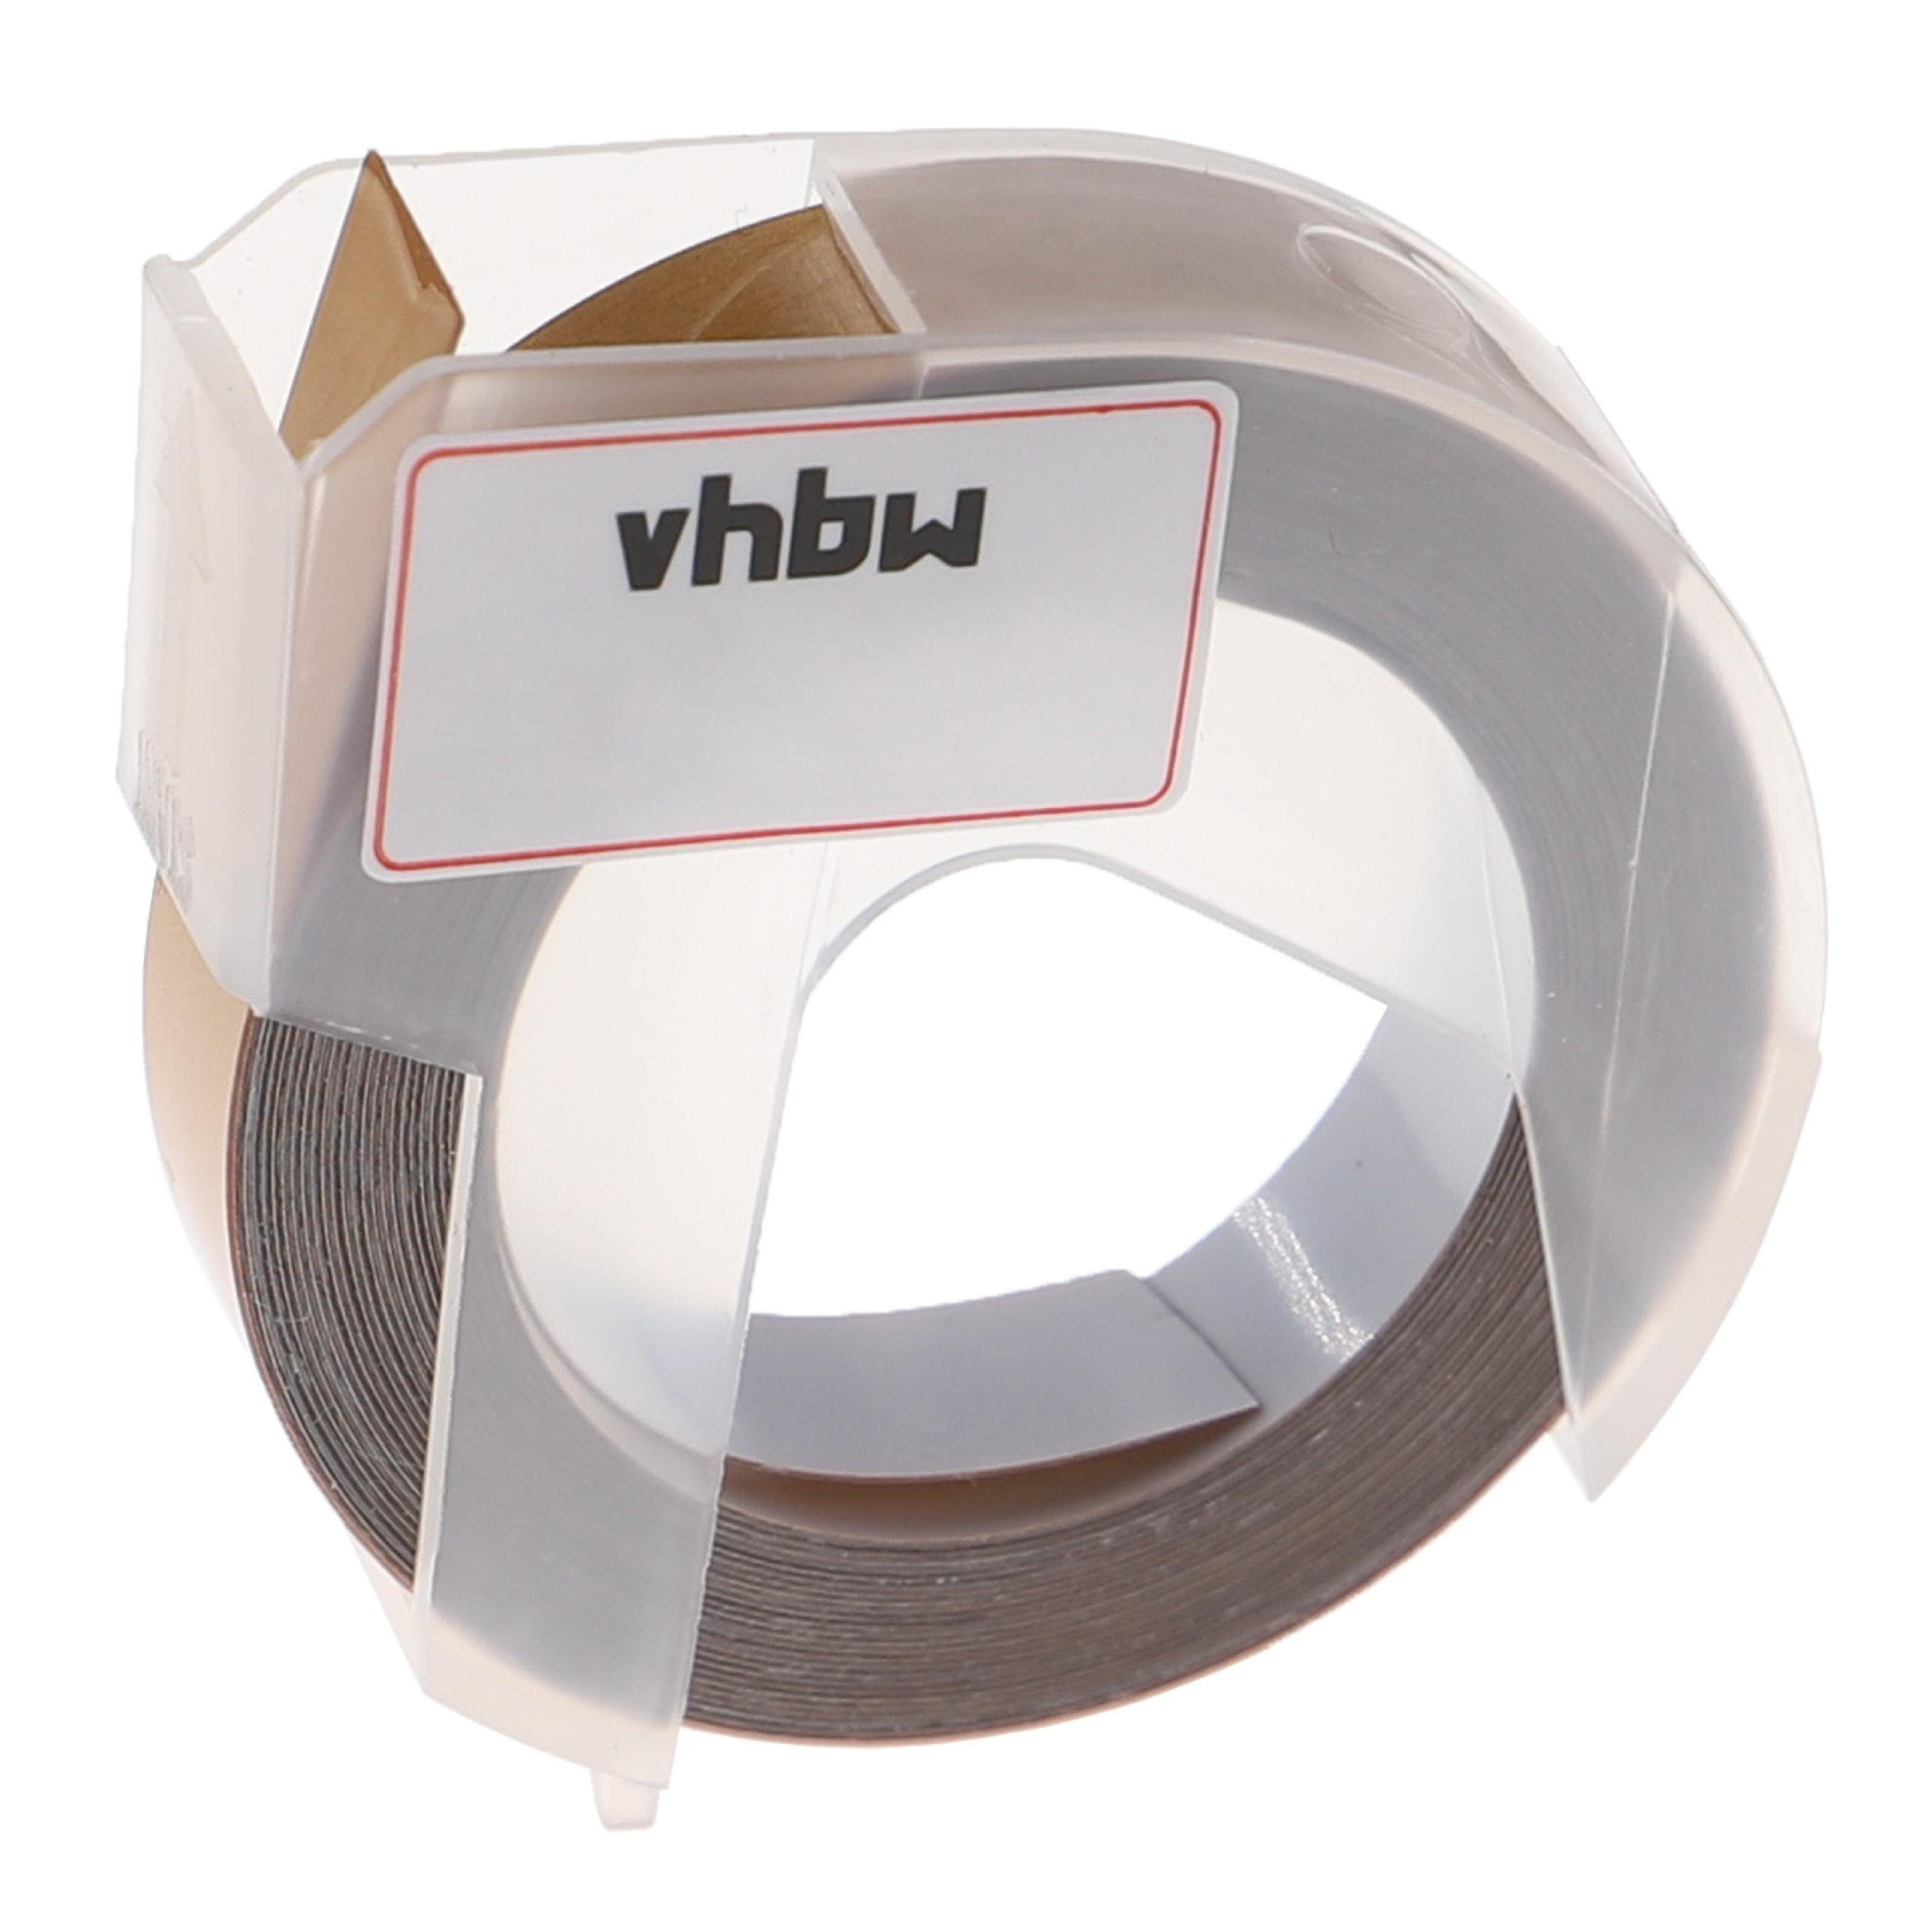 passend Drucker Beschriftungsgerät & vhbw Phomemo Kopierer für Beschriftungsband / E975